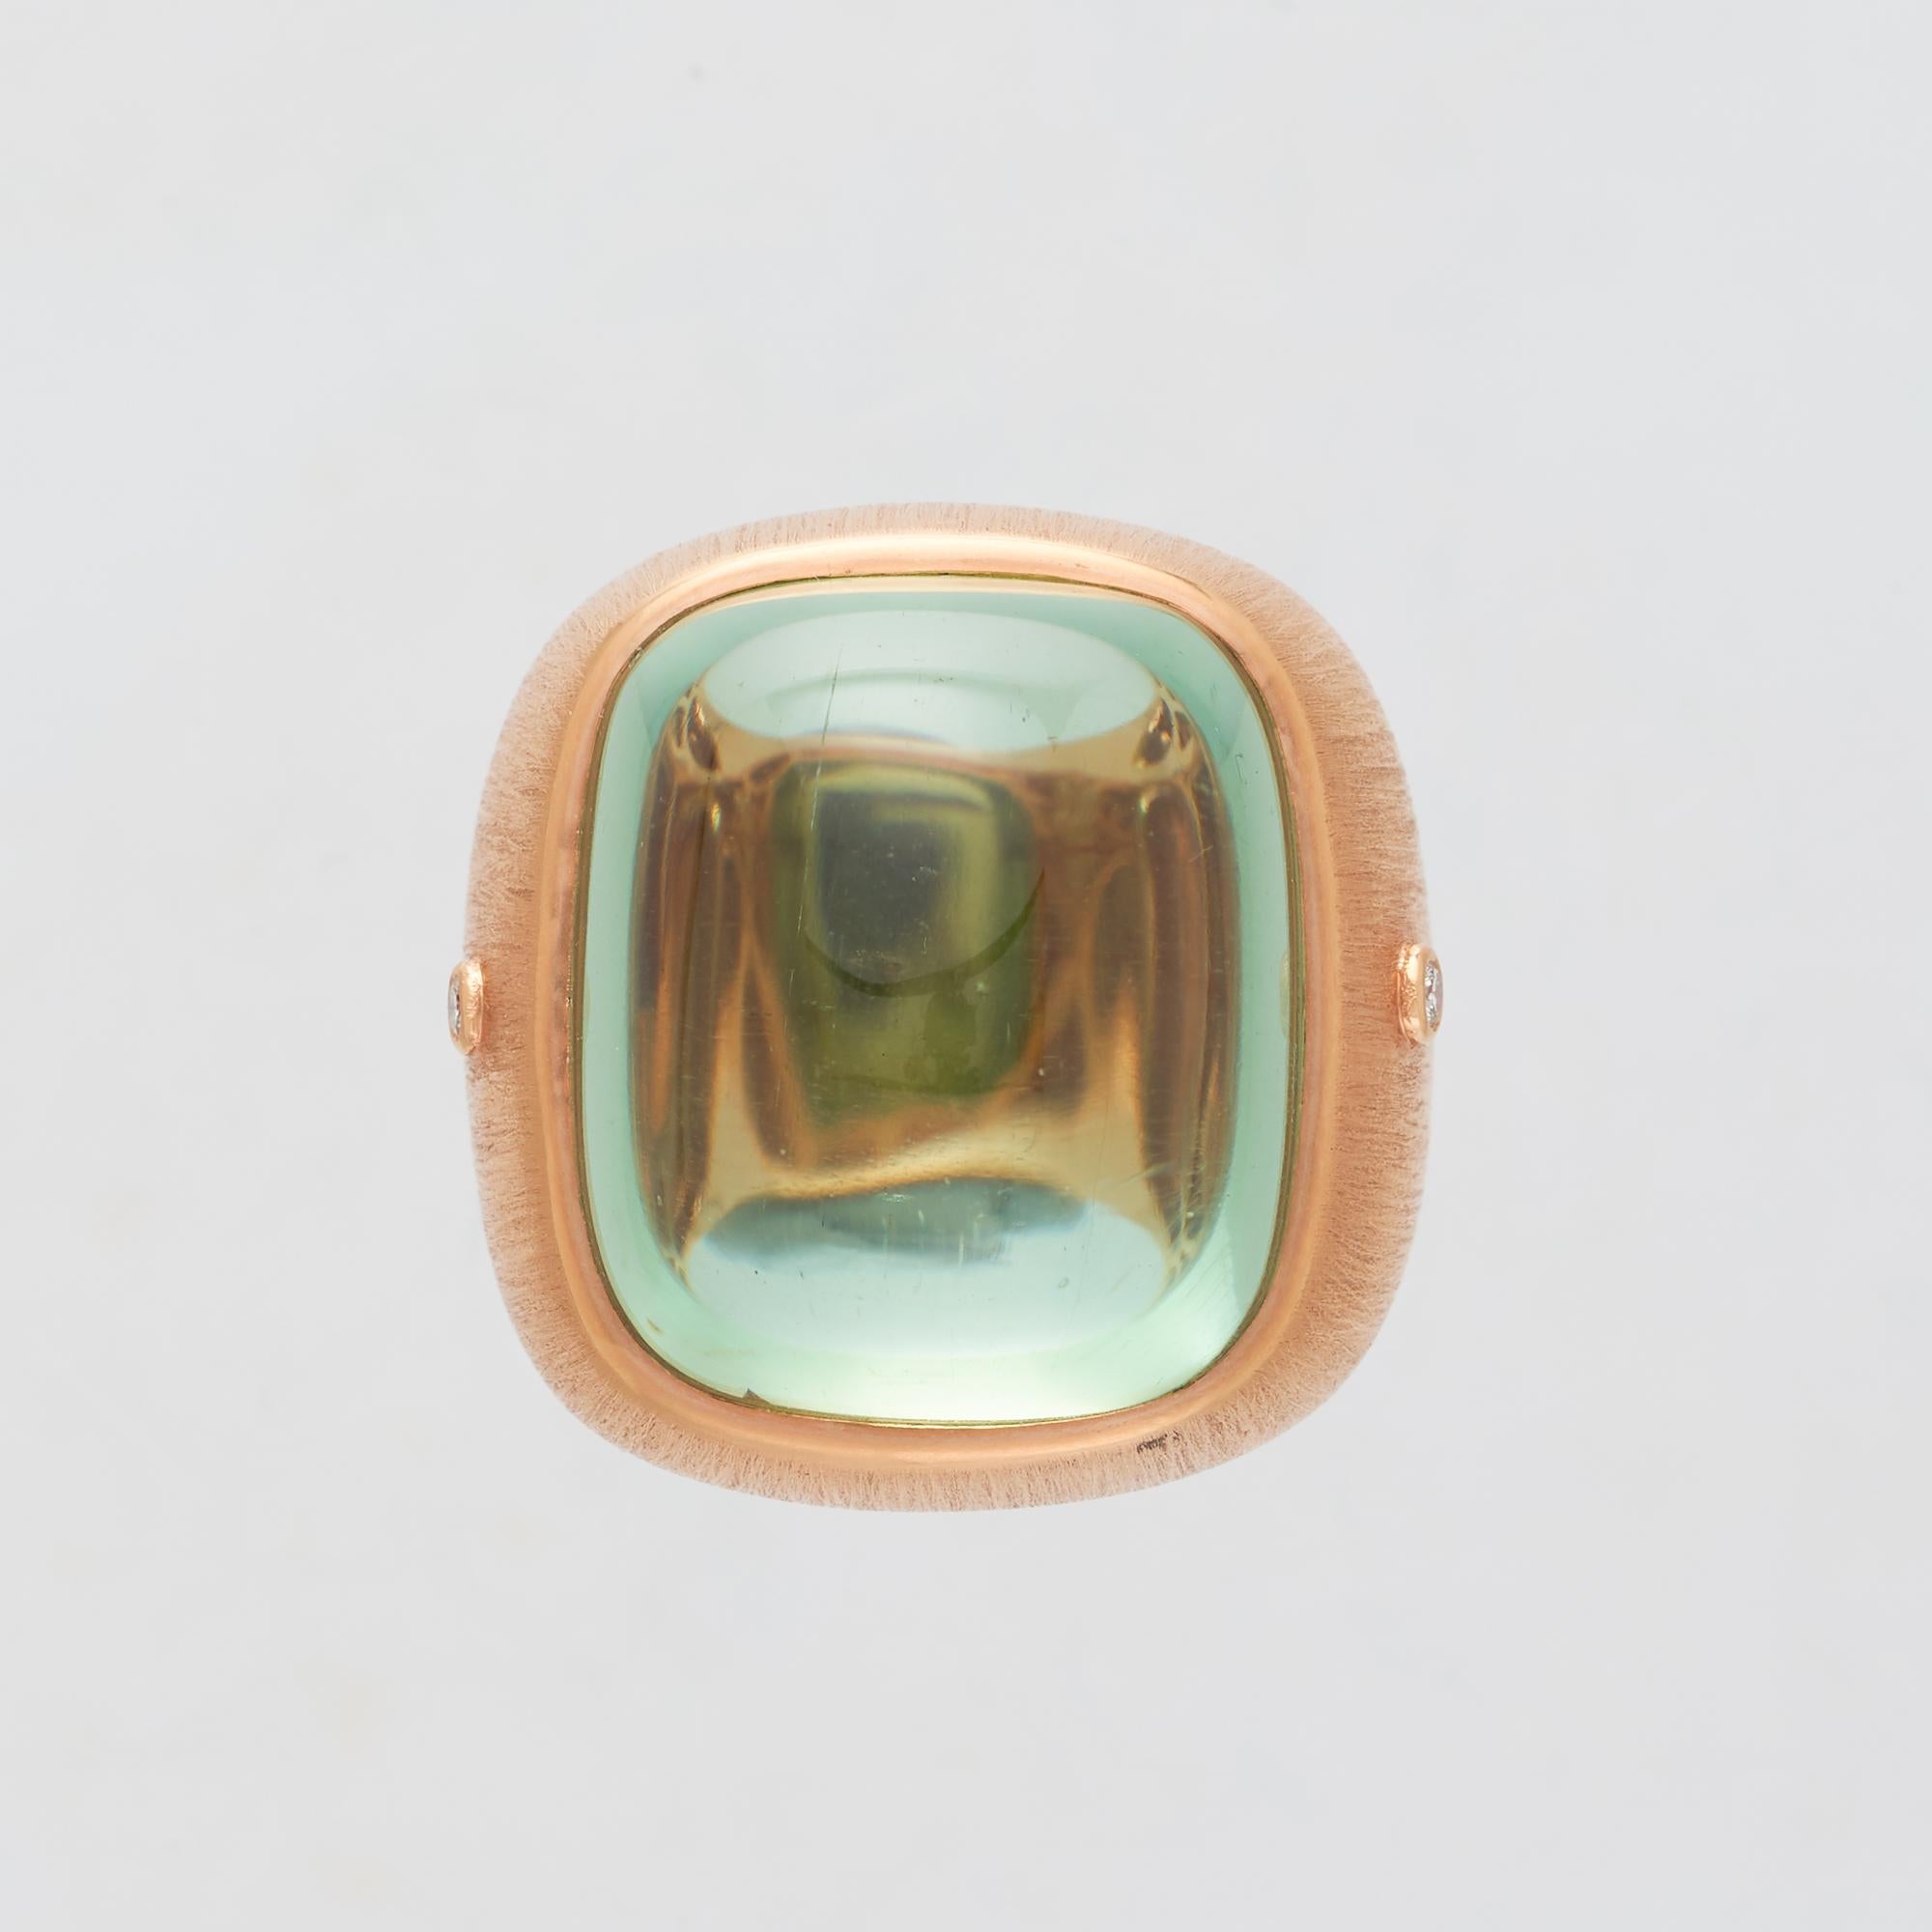 Margot McKinney 18 karat Satin Rose Gold Pale Green Tourmaline 55.81 carat Ring with 2 White Diamonds 0.06 carat.  Size US 6 1/2, UK/AU M 1/2  

